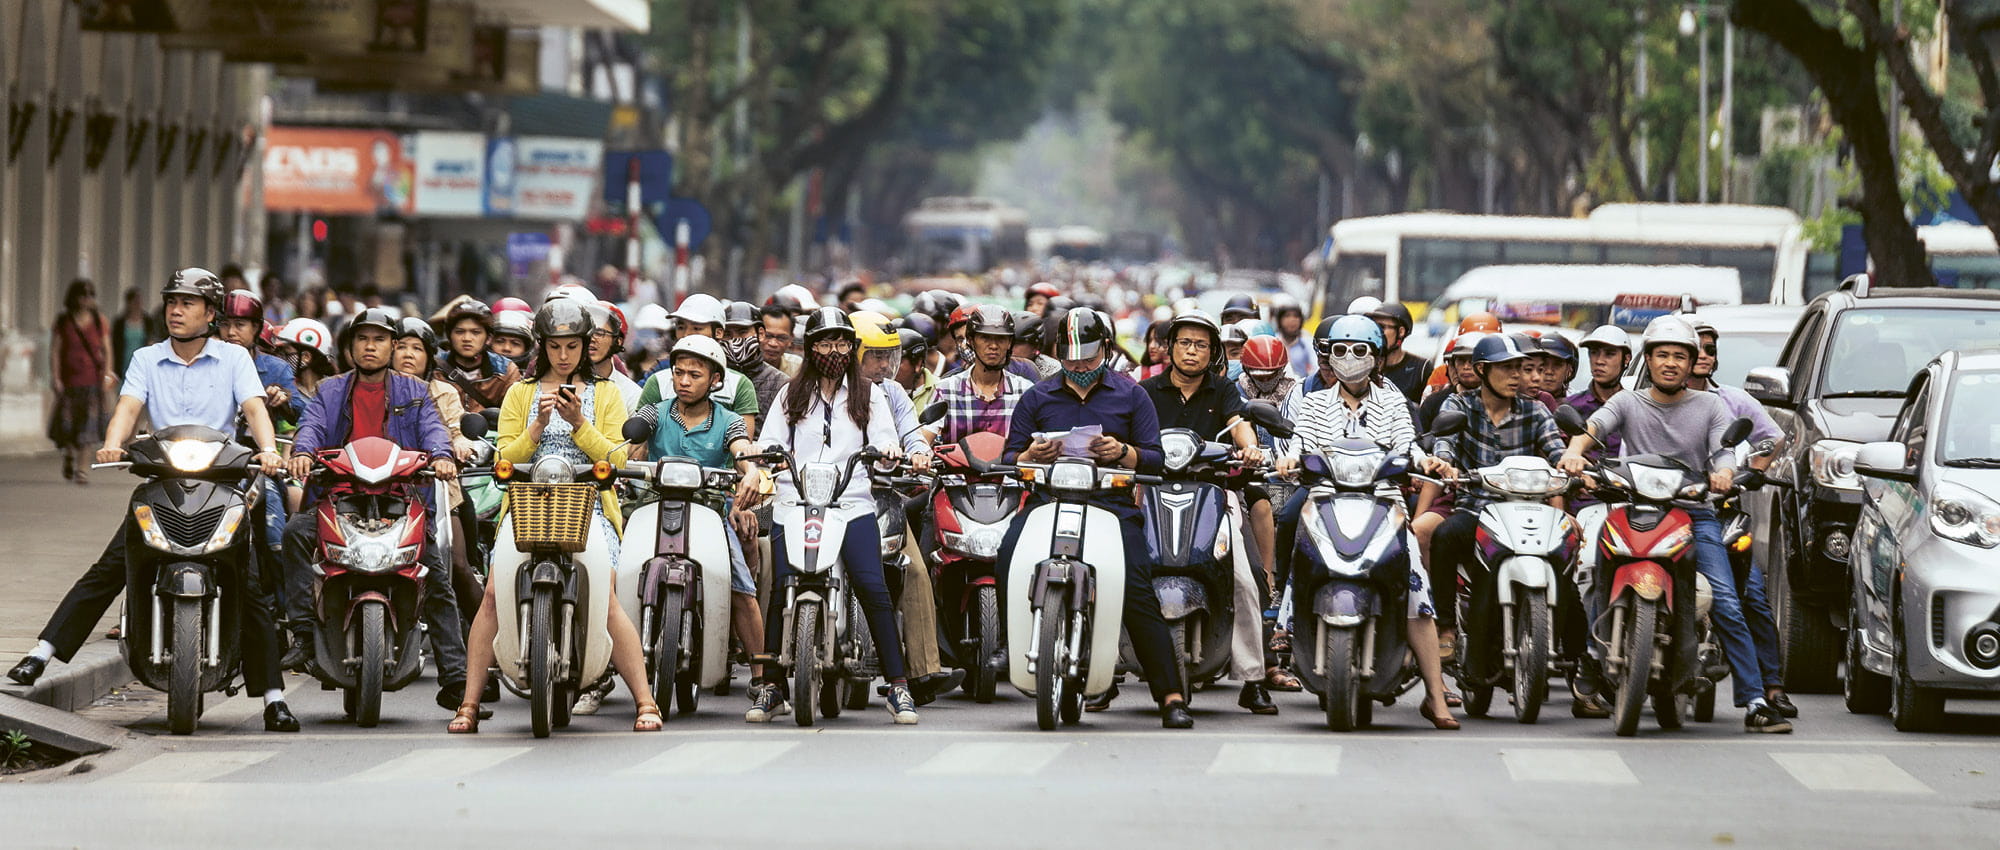 Viele Menschen auf Motorrädern warten vor einem Zebrastreifen. Copyright: iStock/Artit_Wongpradu